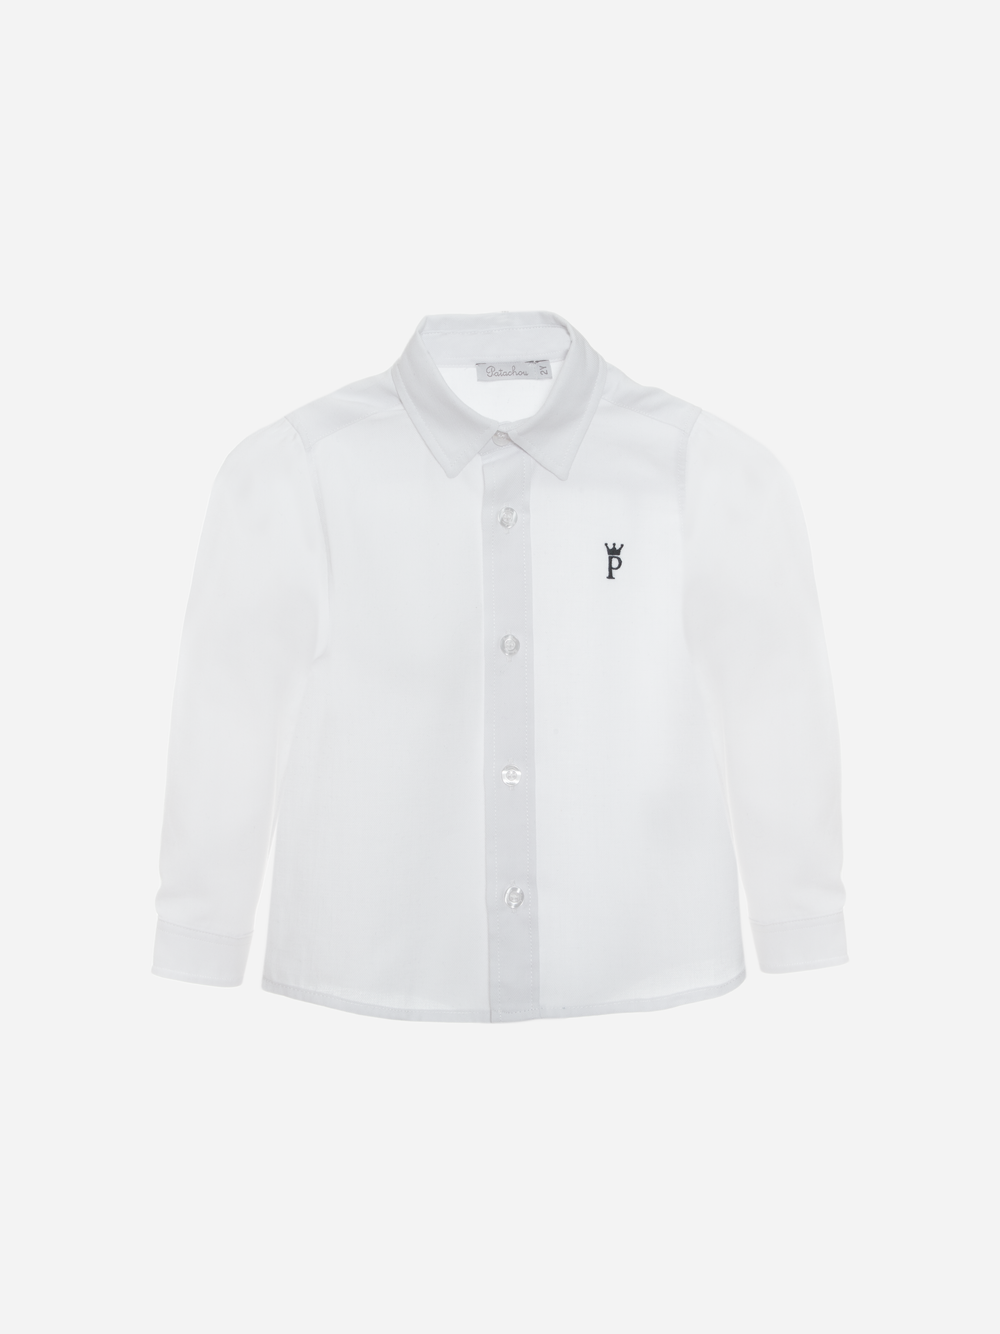 Woven Shirt White 12m - 4år